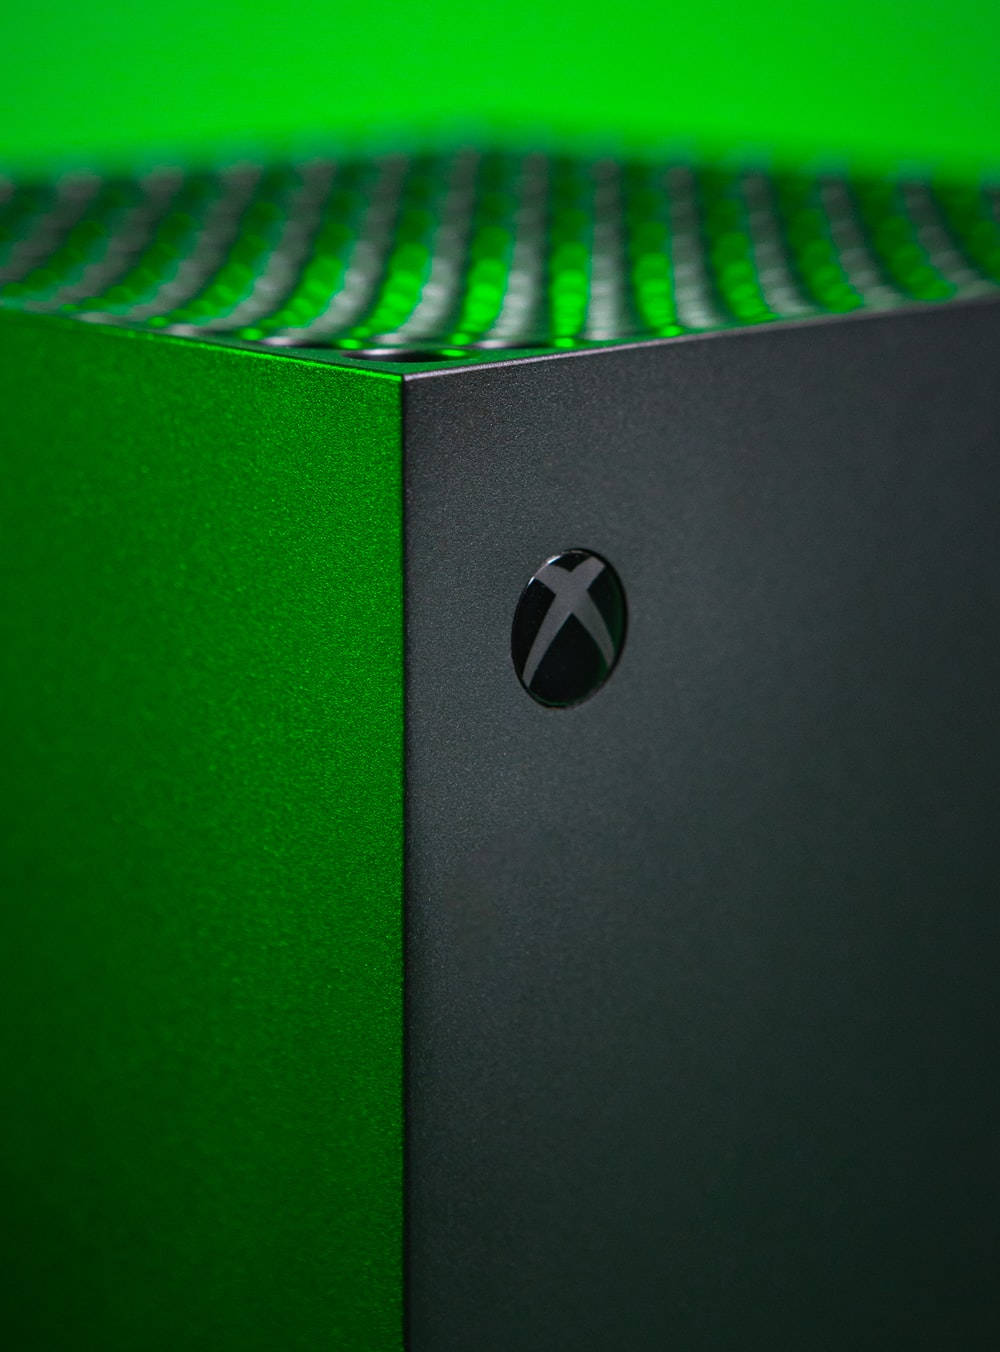 Xbox Series X Wallpaper: Cùng trải nghiệm độ sắc nét và tinh tế của hình nền Xbox Series X. Với độ phân giải cao vượt trội, hình nền sẽ đưa bạn đến với những thế giới ảo đầy màu sắc khác nhau. Chắc chắn, bạn sẽ không thể rời mắt khỏi màn hình khi được trải nghiệm hình nền này.